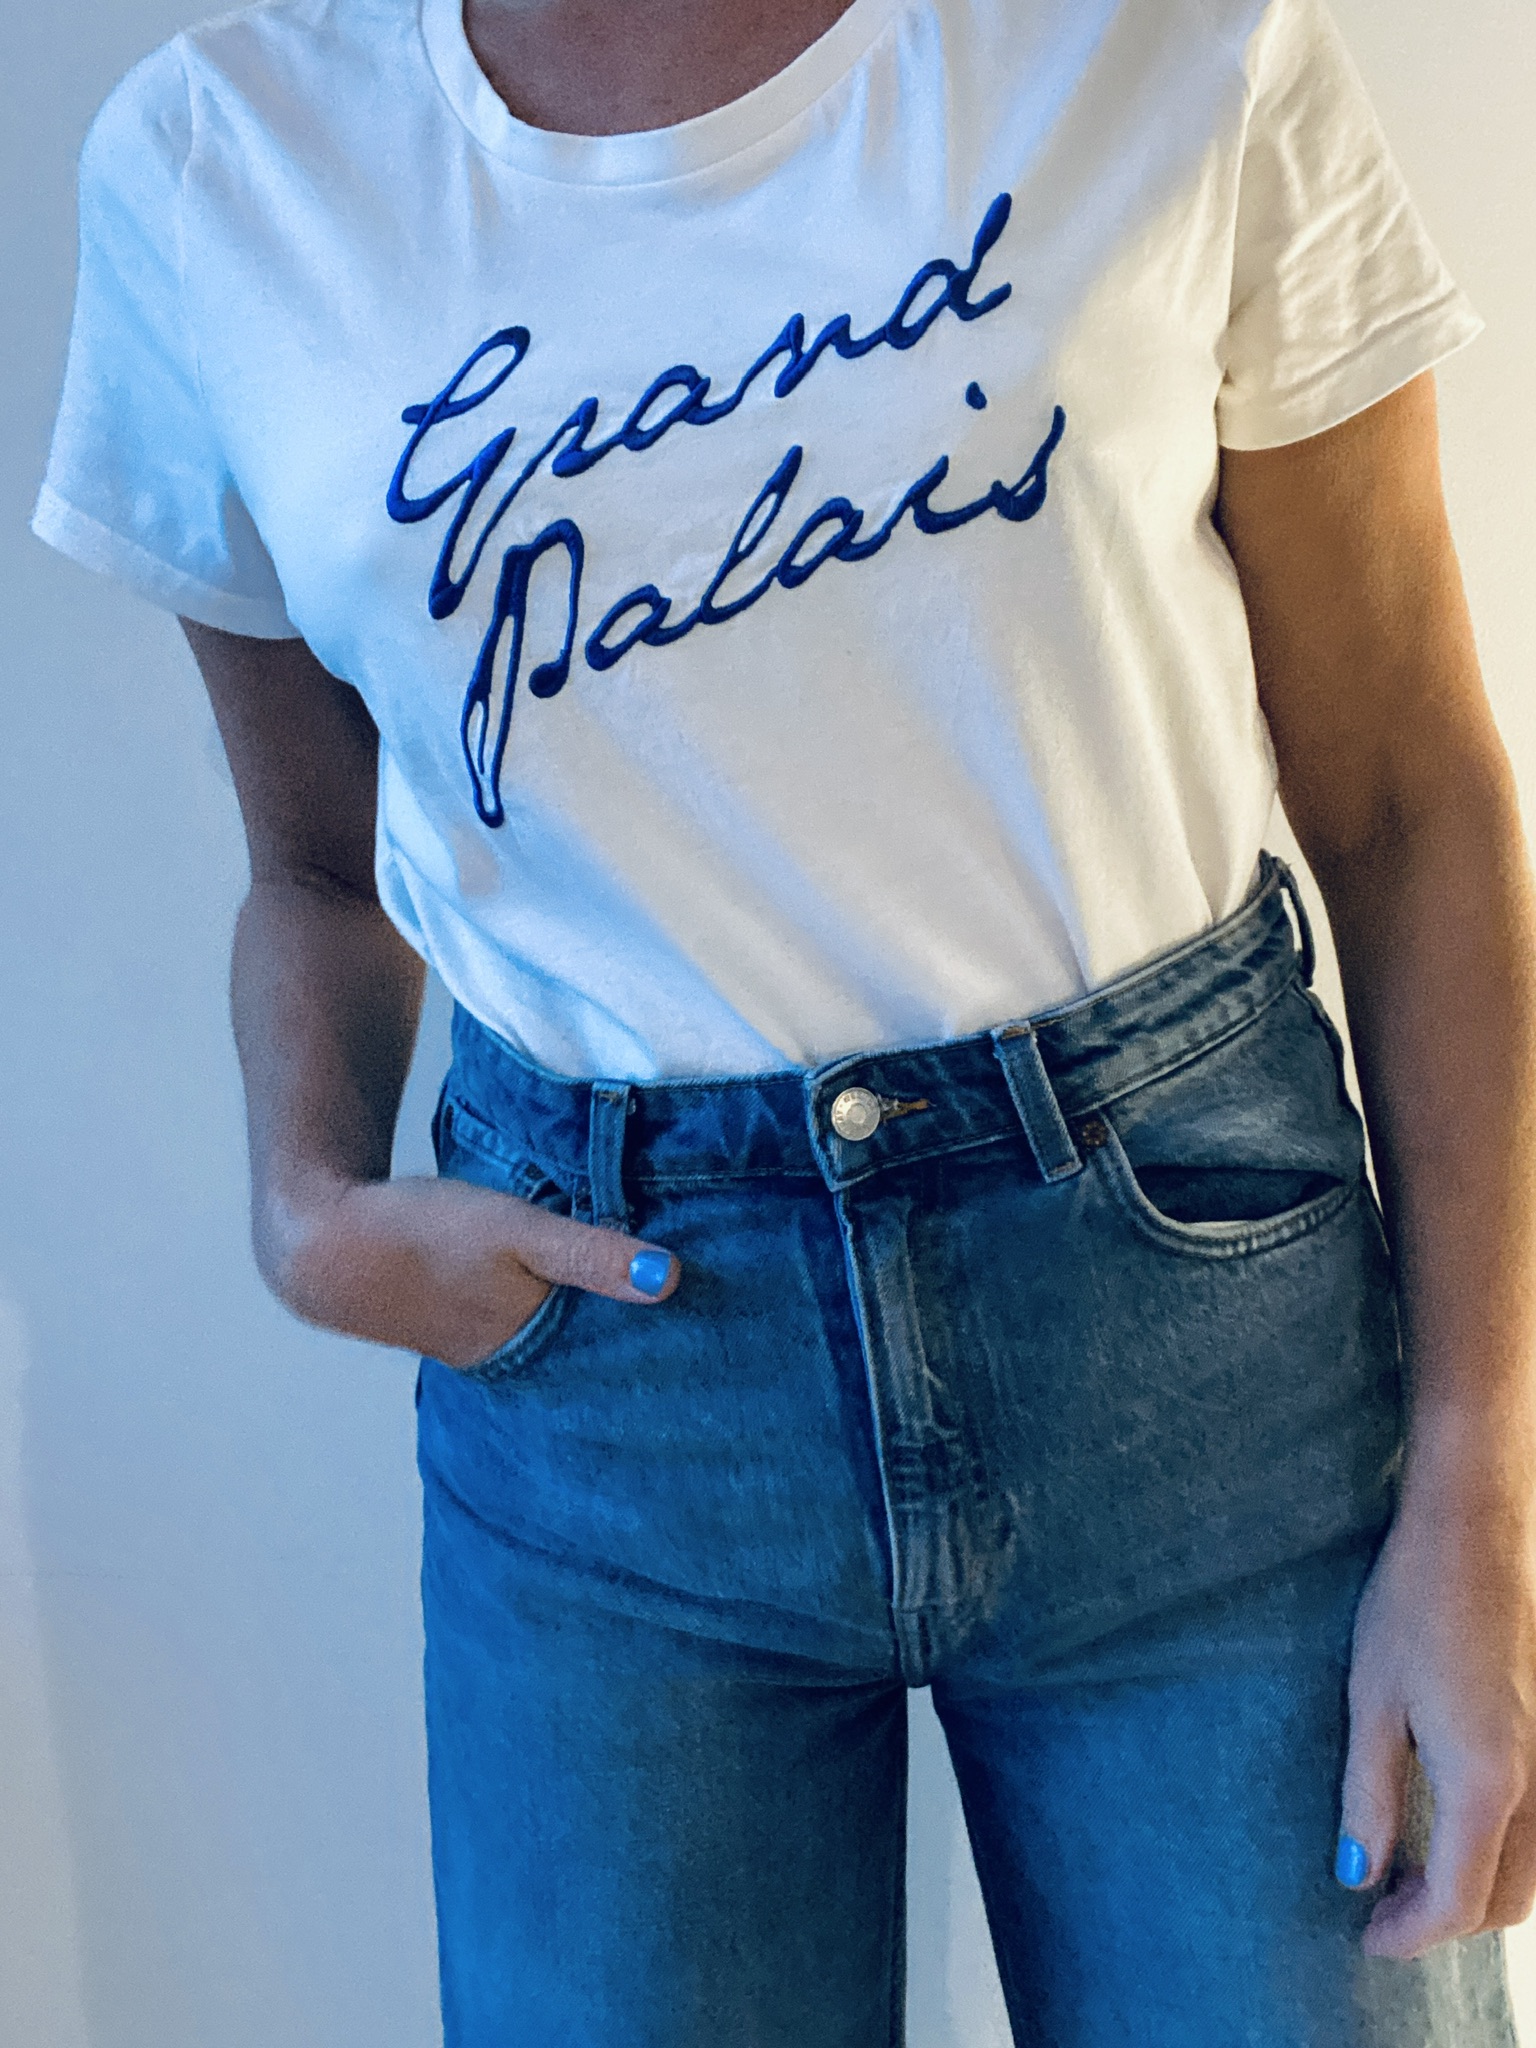 T-shirt: Grand Palace